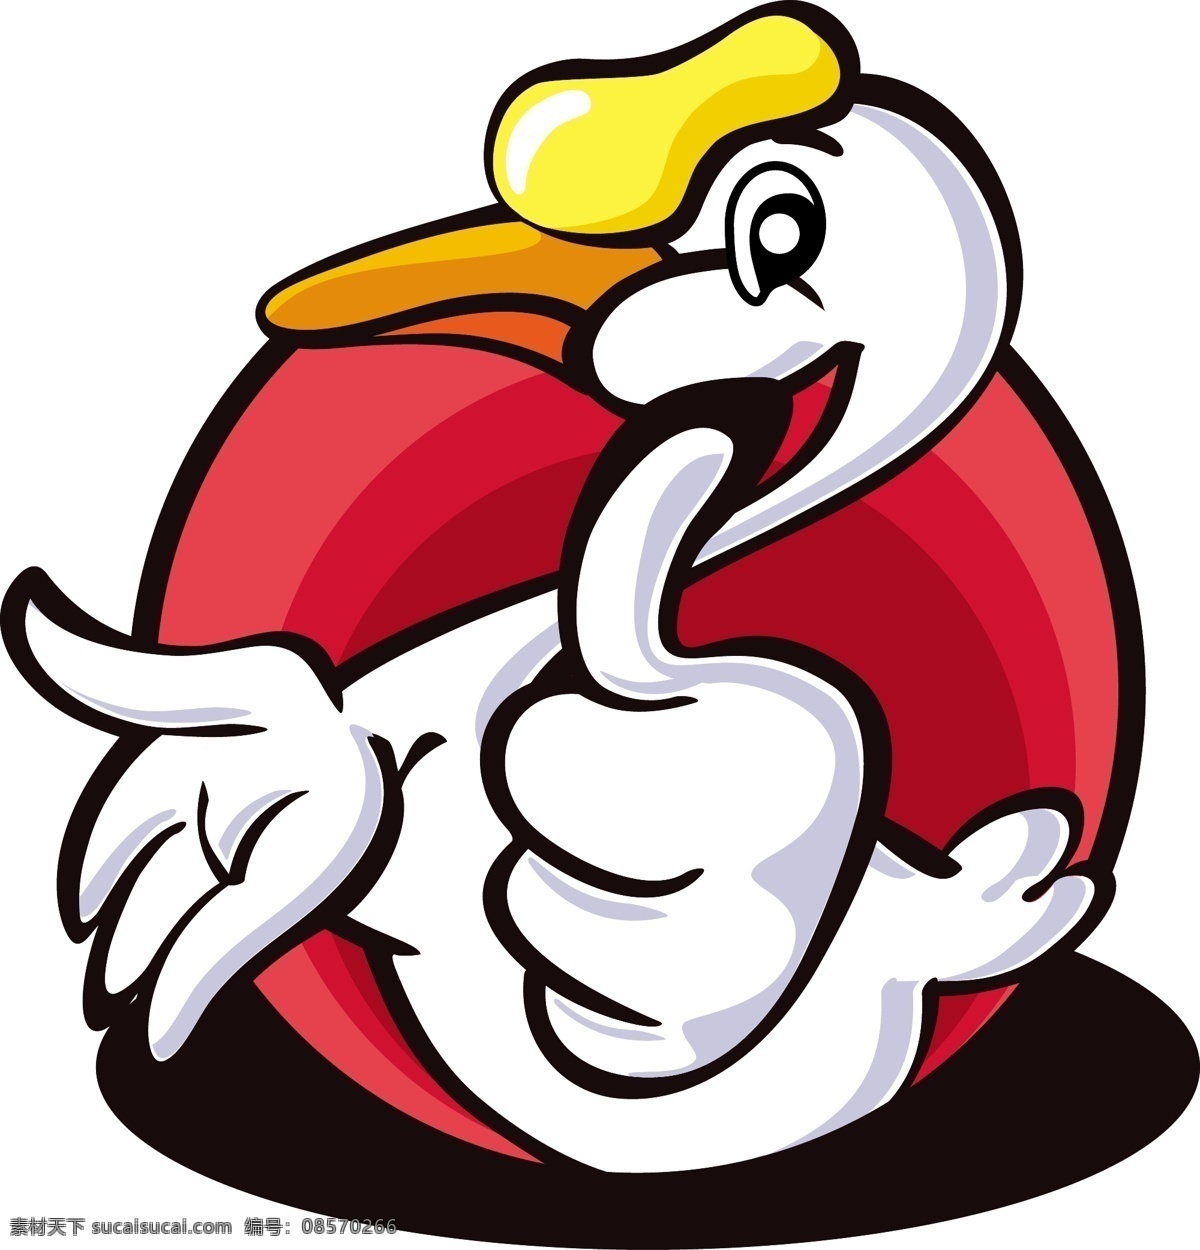 矢量 卡通 动物 形象 鹅 原创 商用 logo